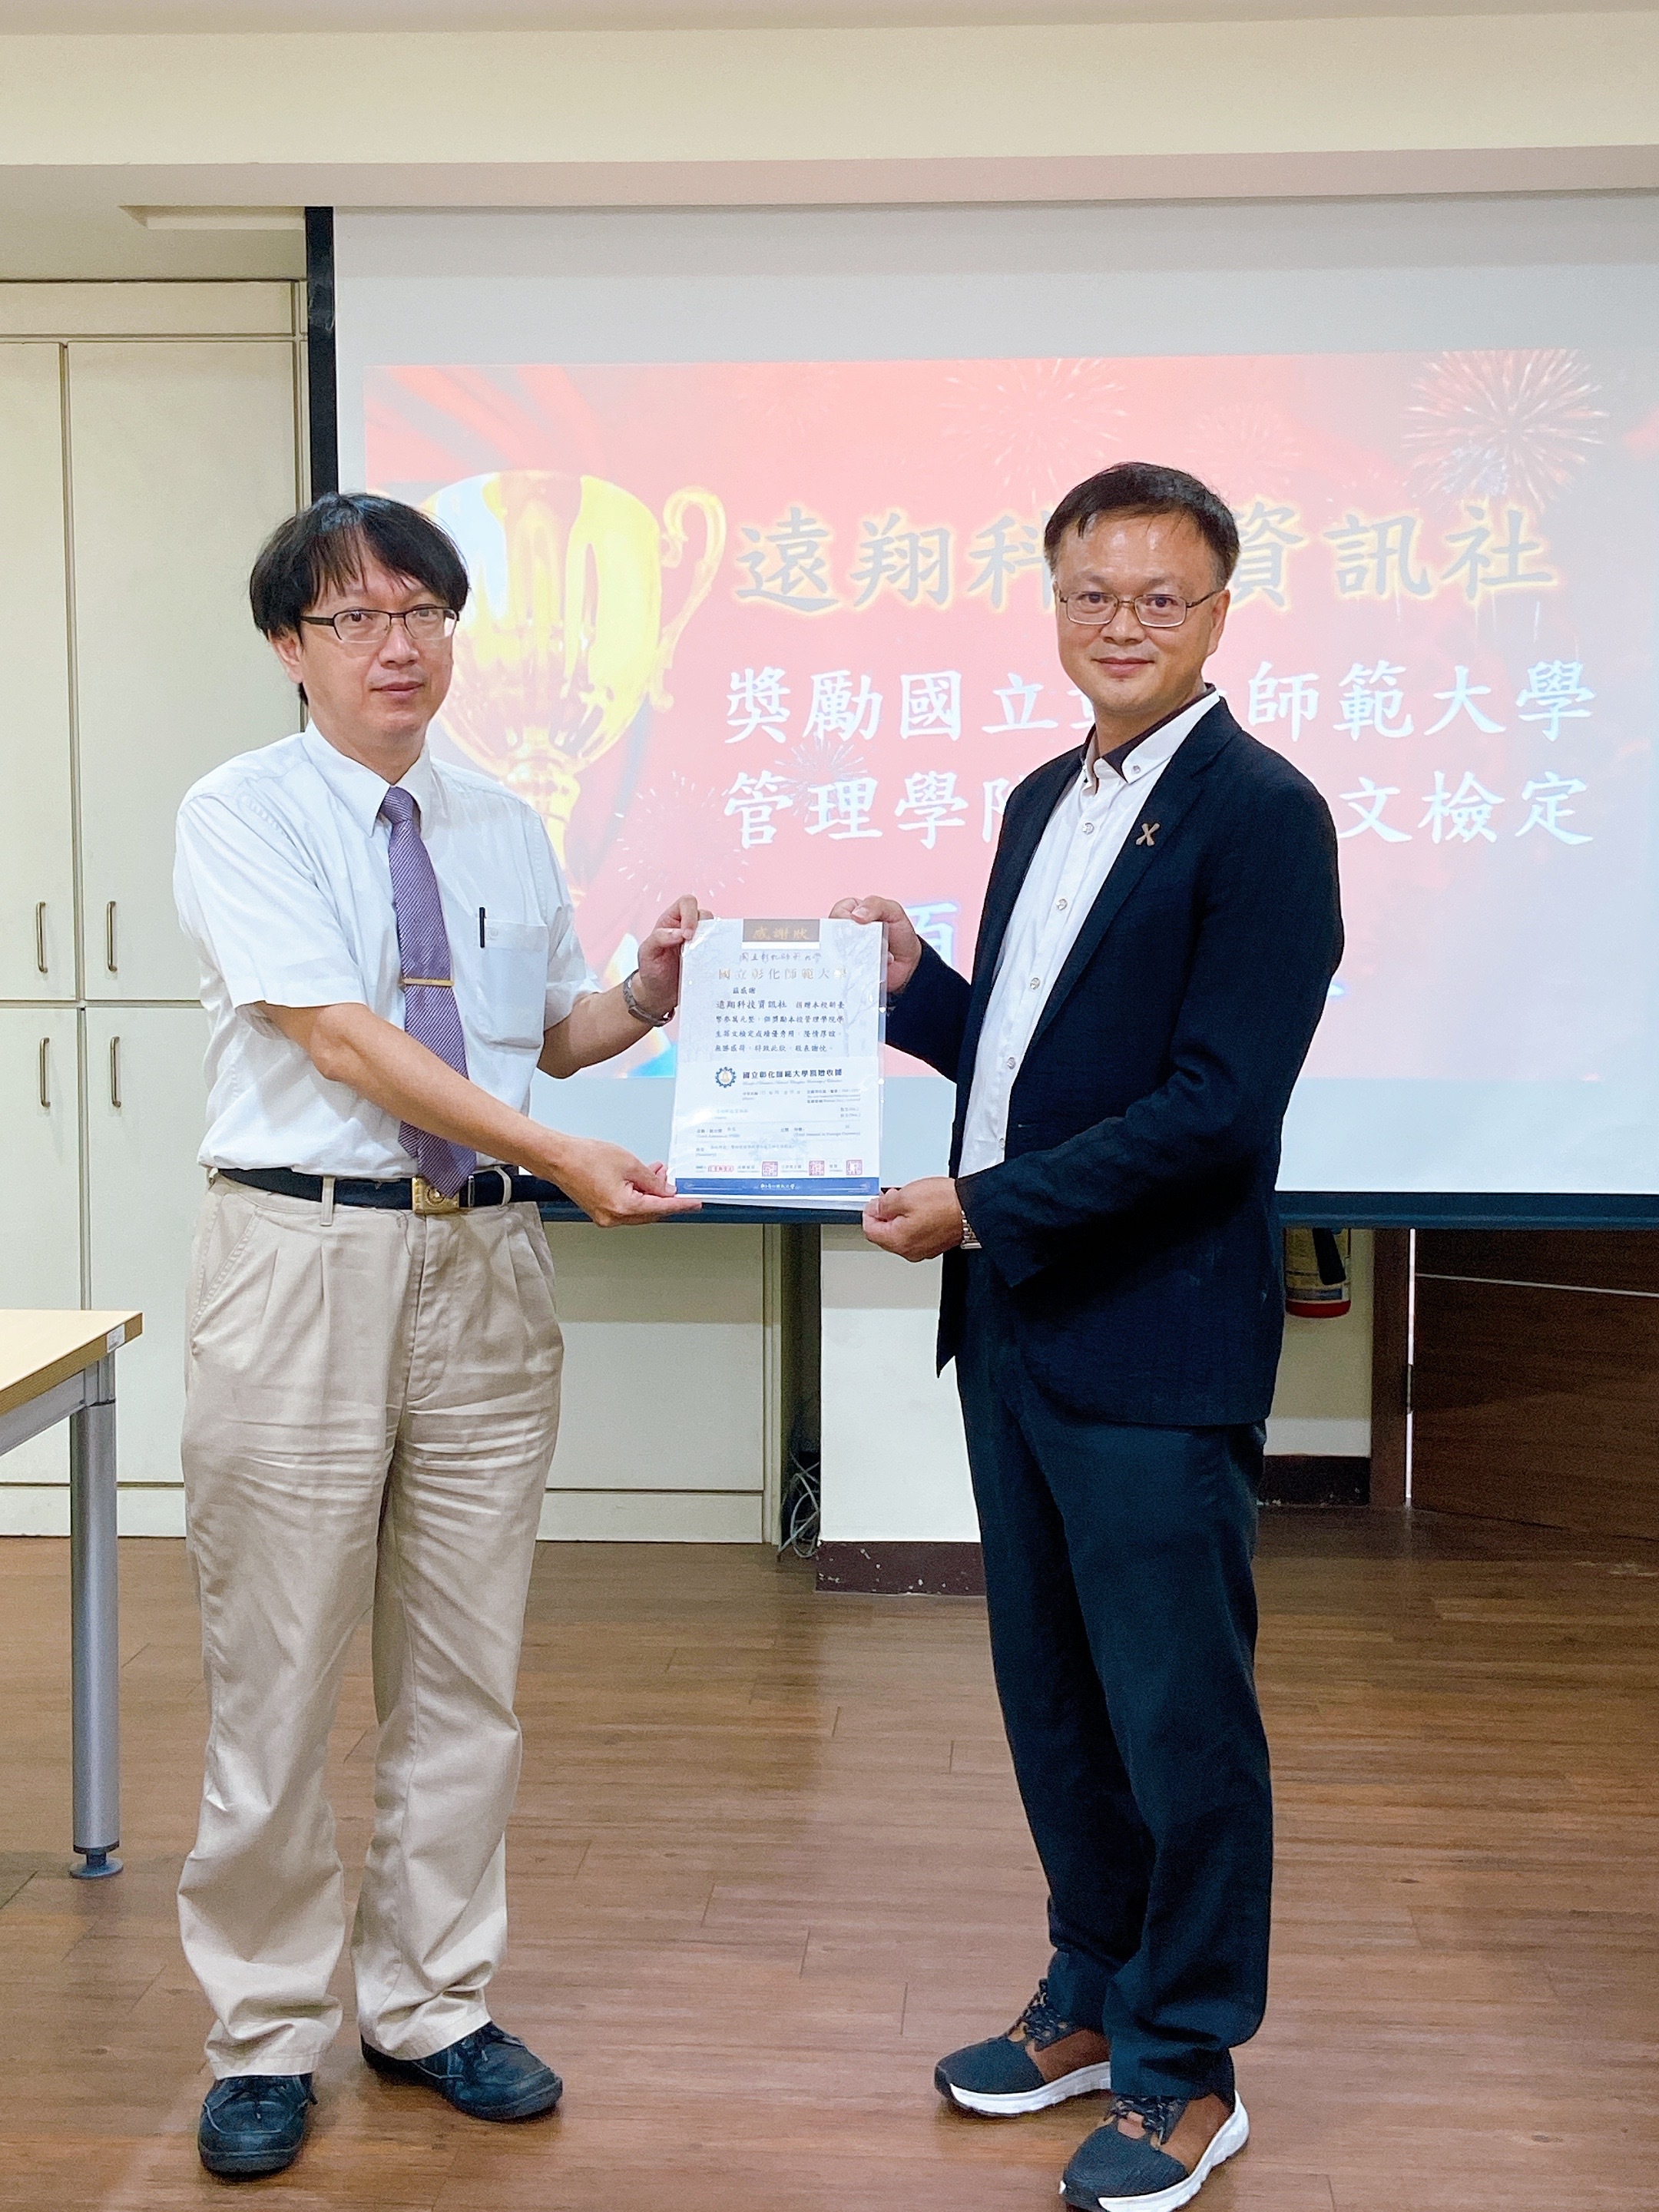  管理學院吳信宏院長頒發感謝狀予蔣文平董事長。